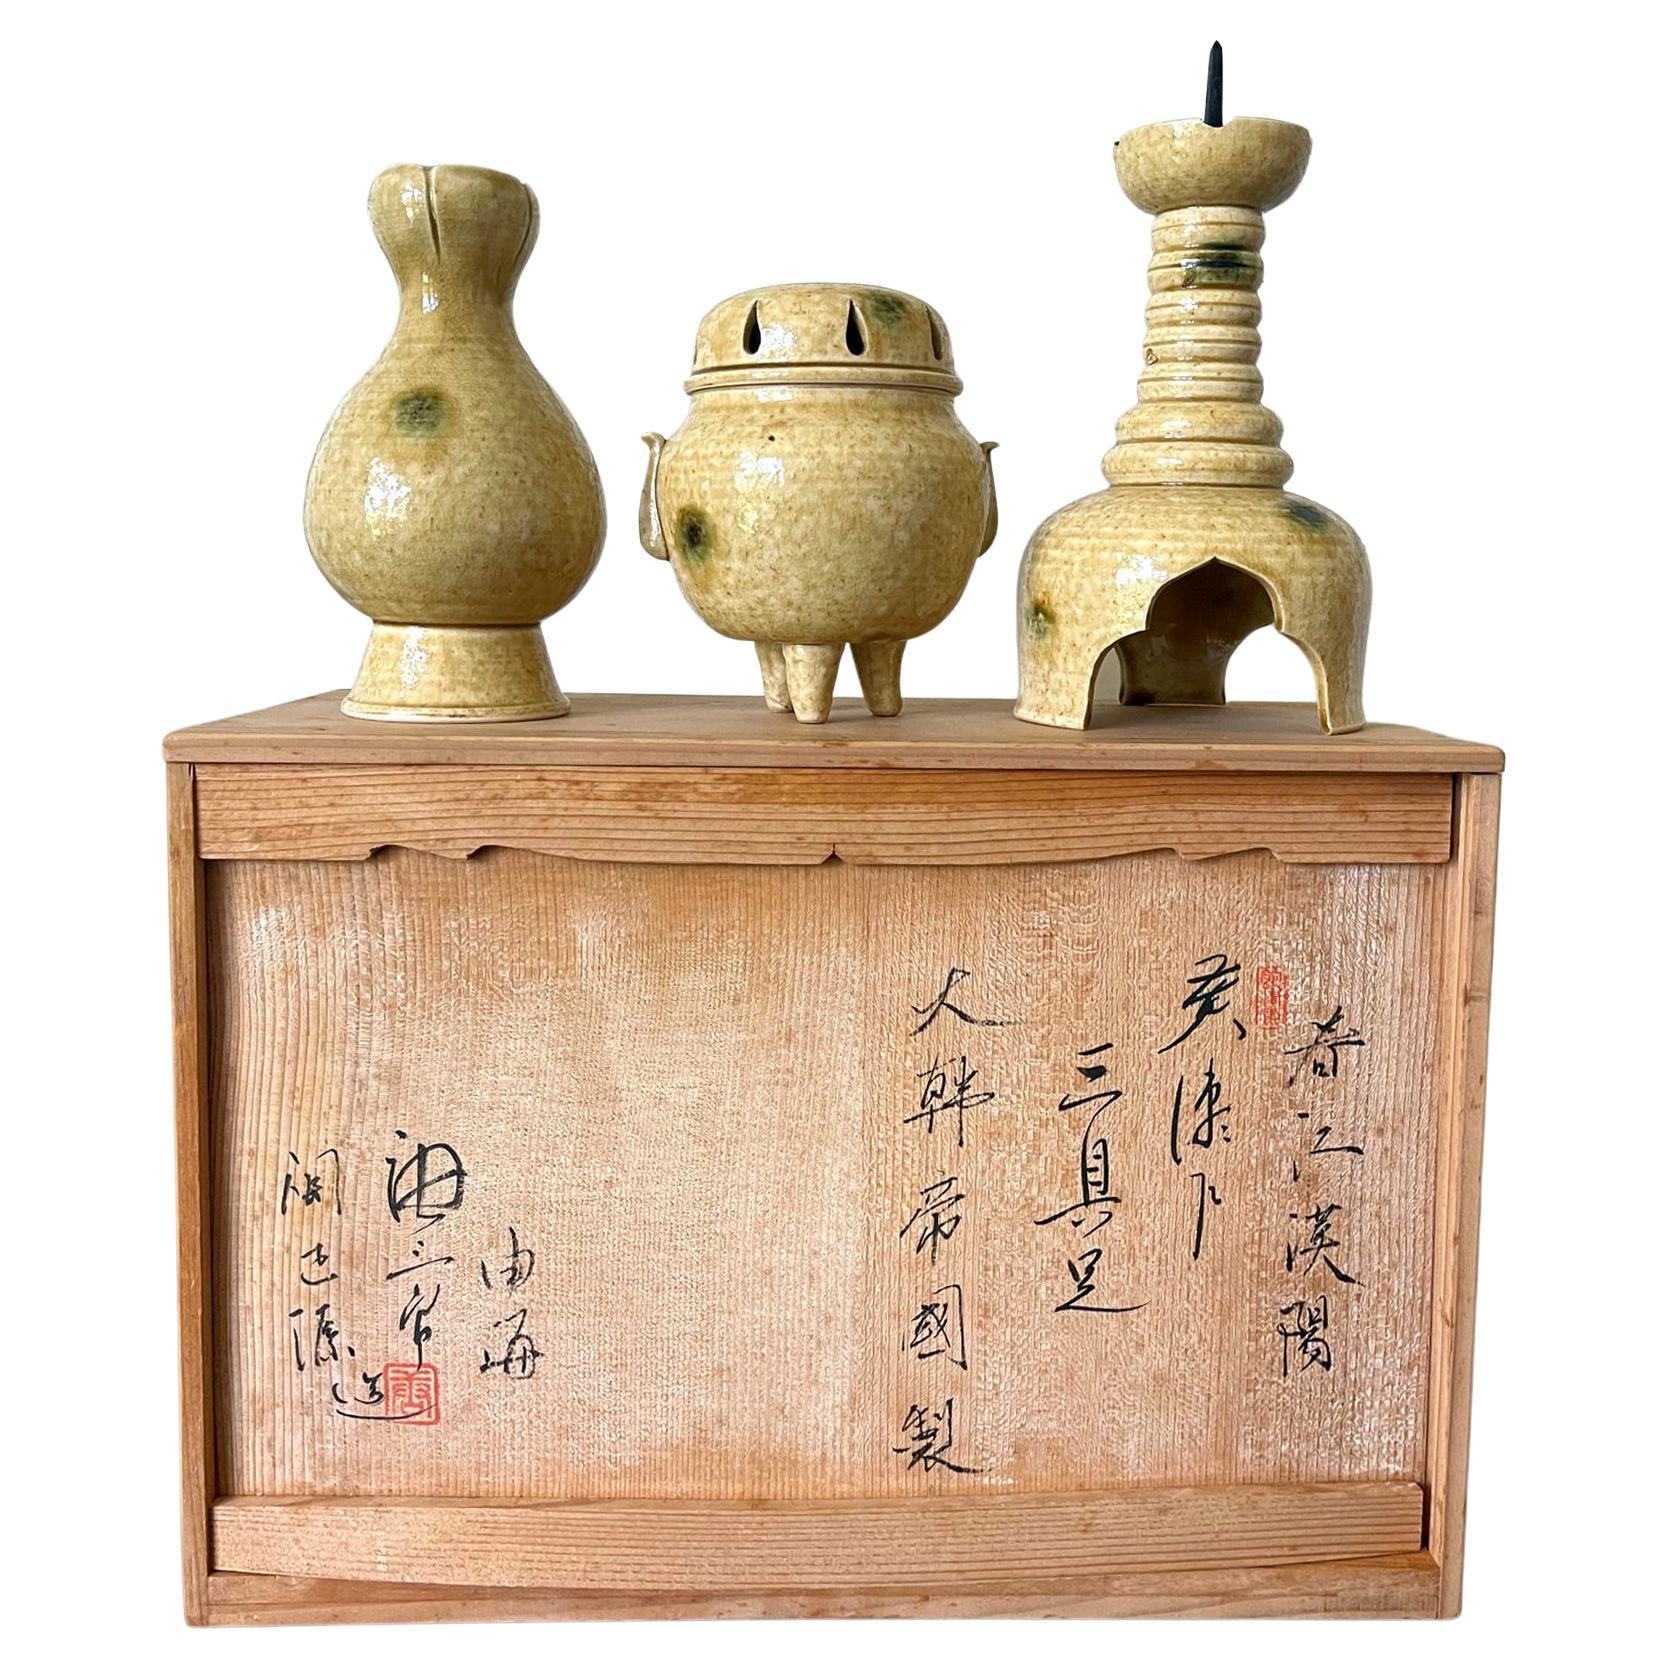 Set of Ki-Seto Ceramic Altar Pieces from Korean Empire Period For Sale